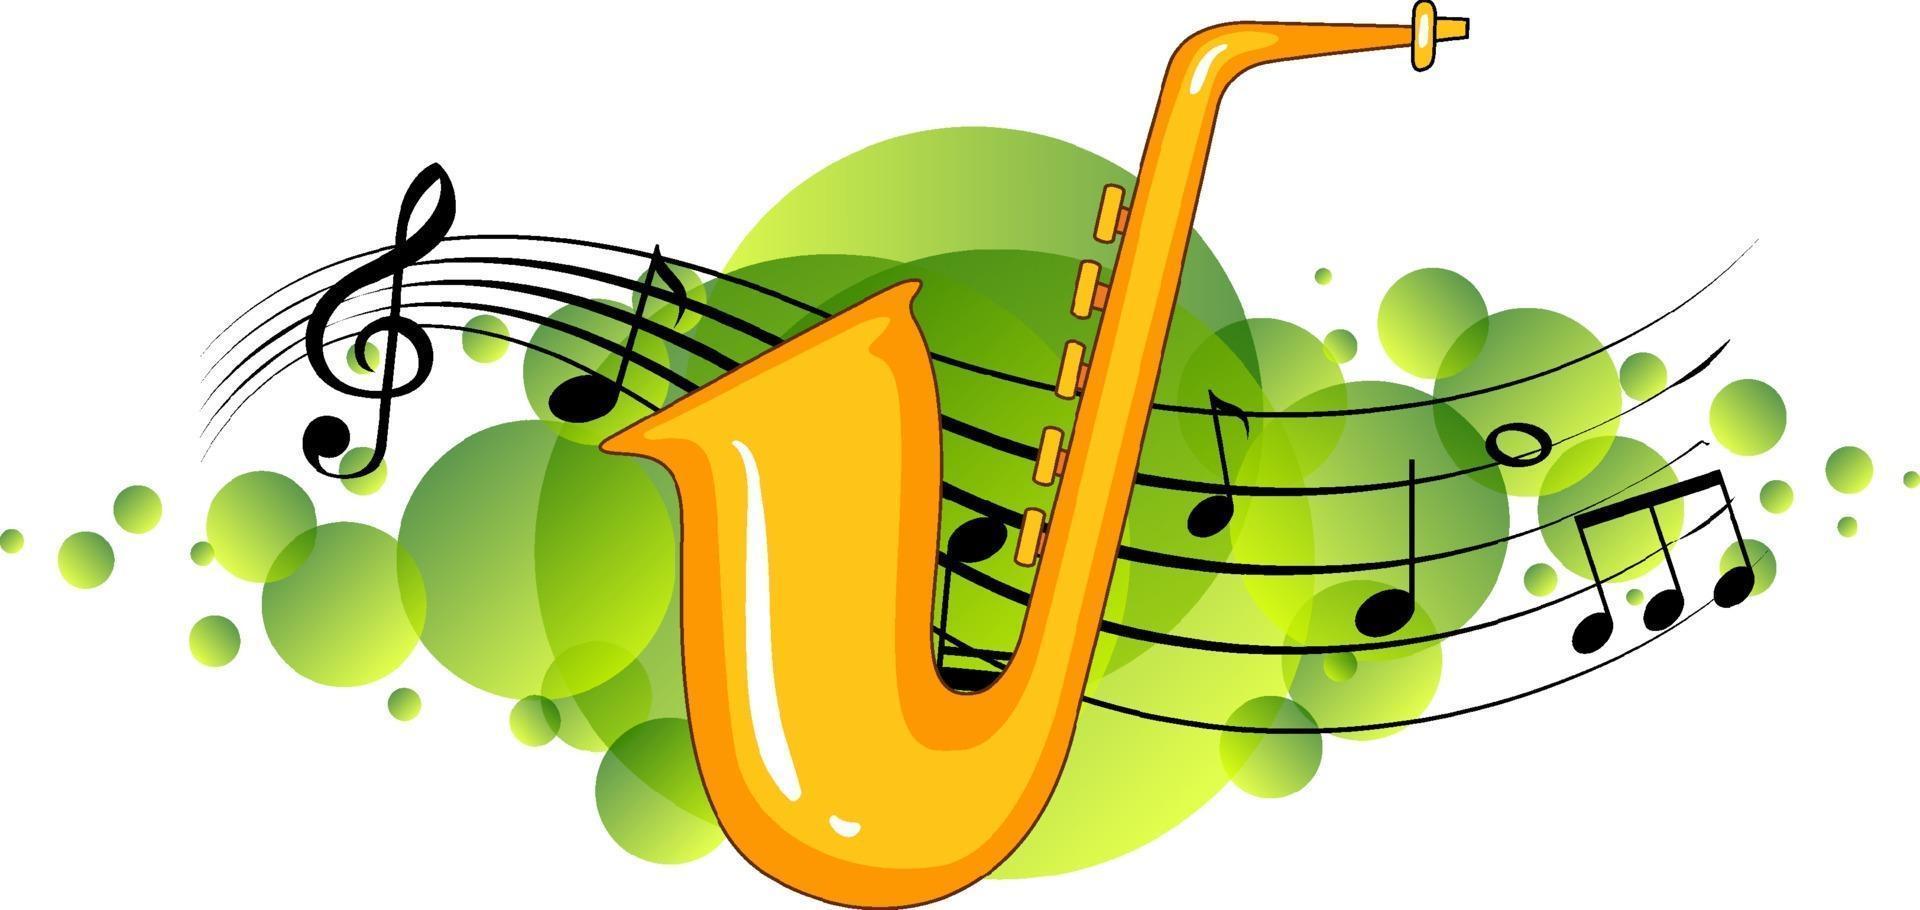 saxofon musikinstrument med melodisymboler på grönt fläck vektor